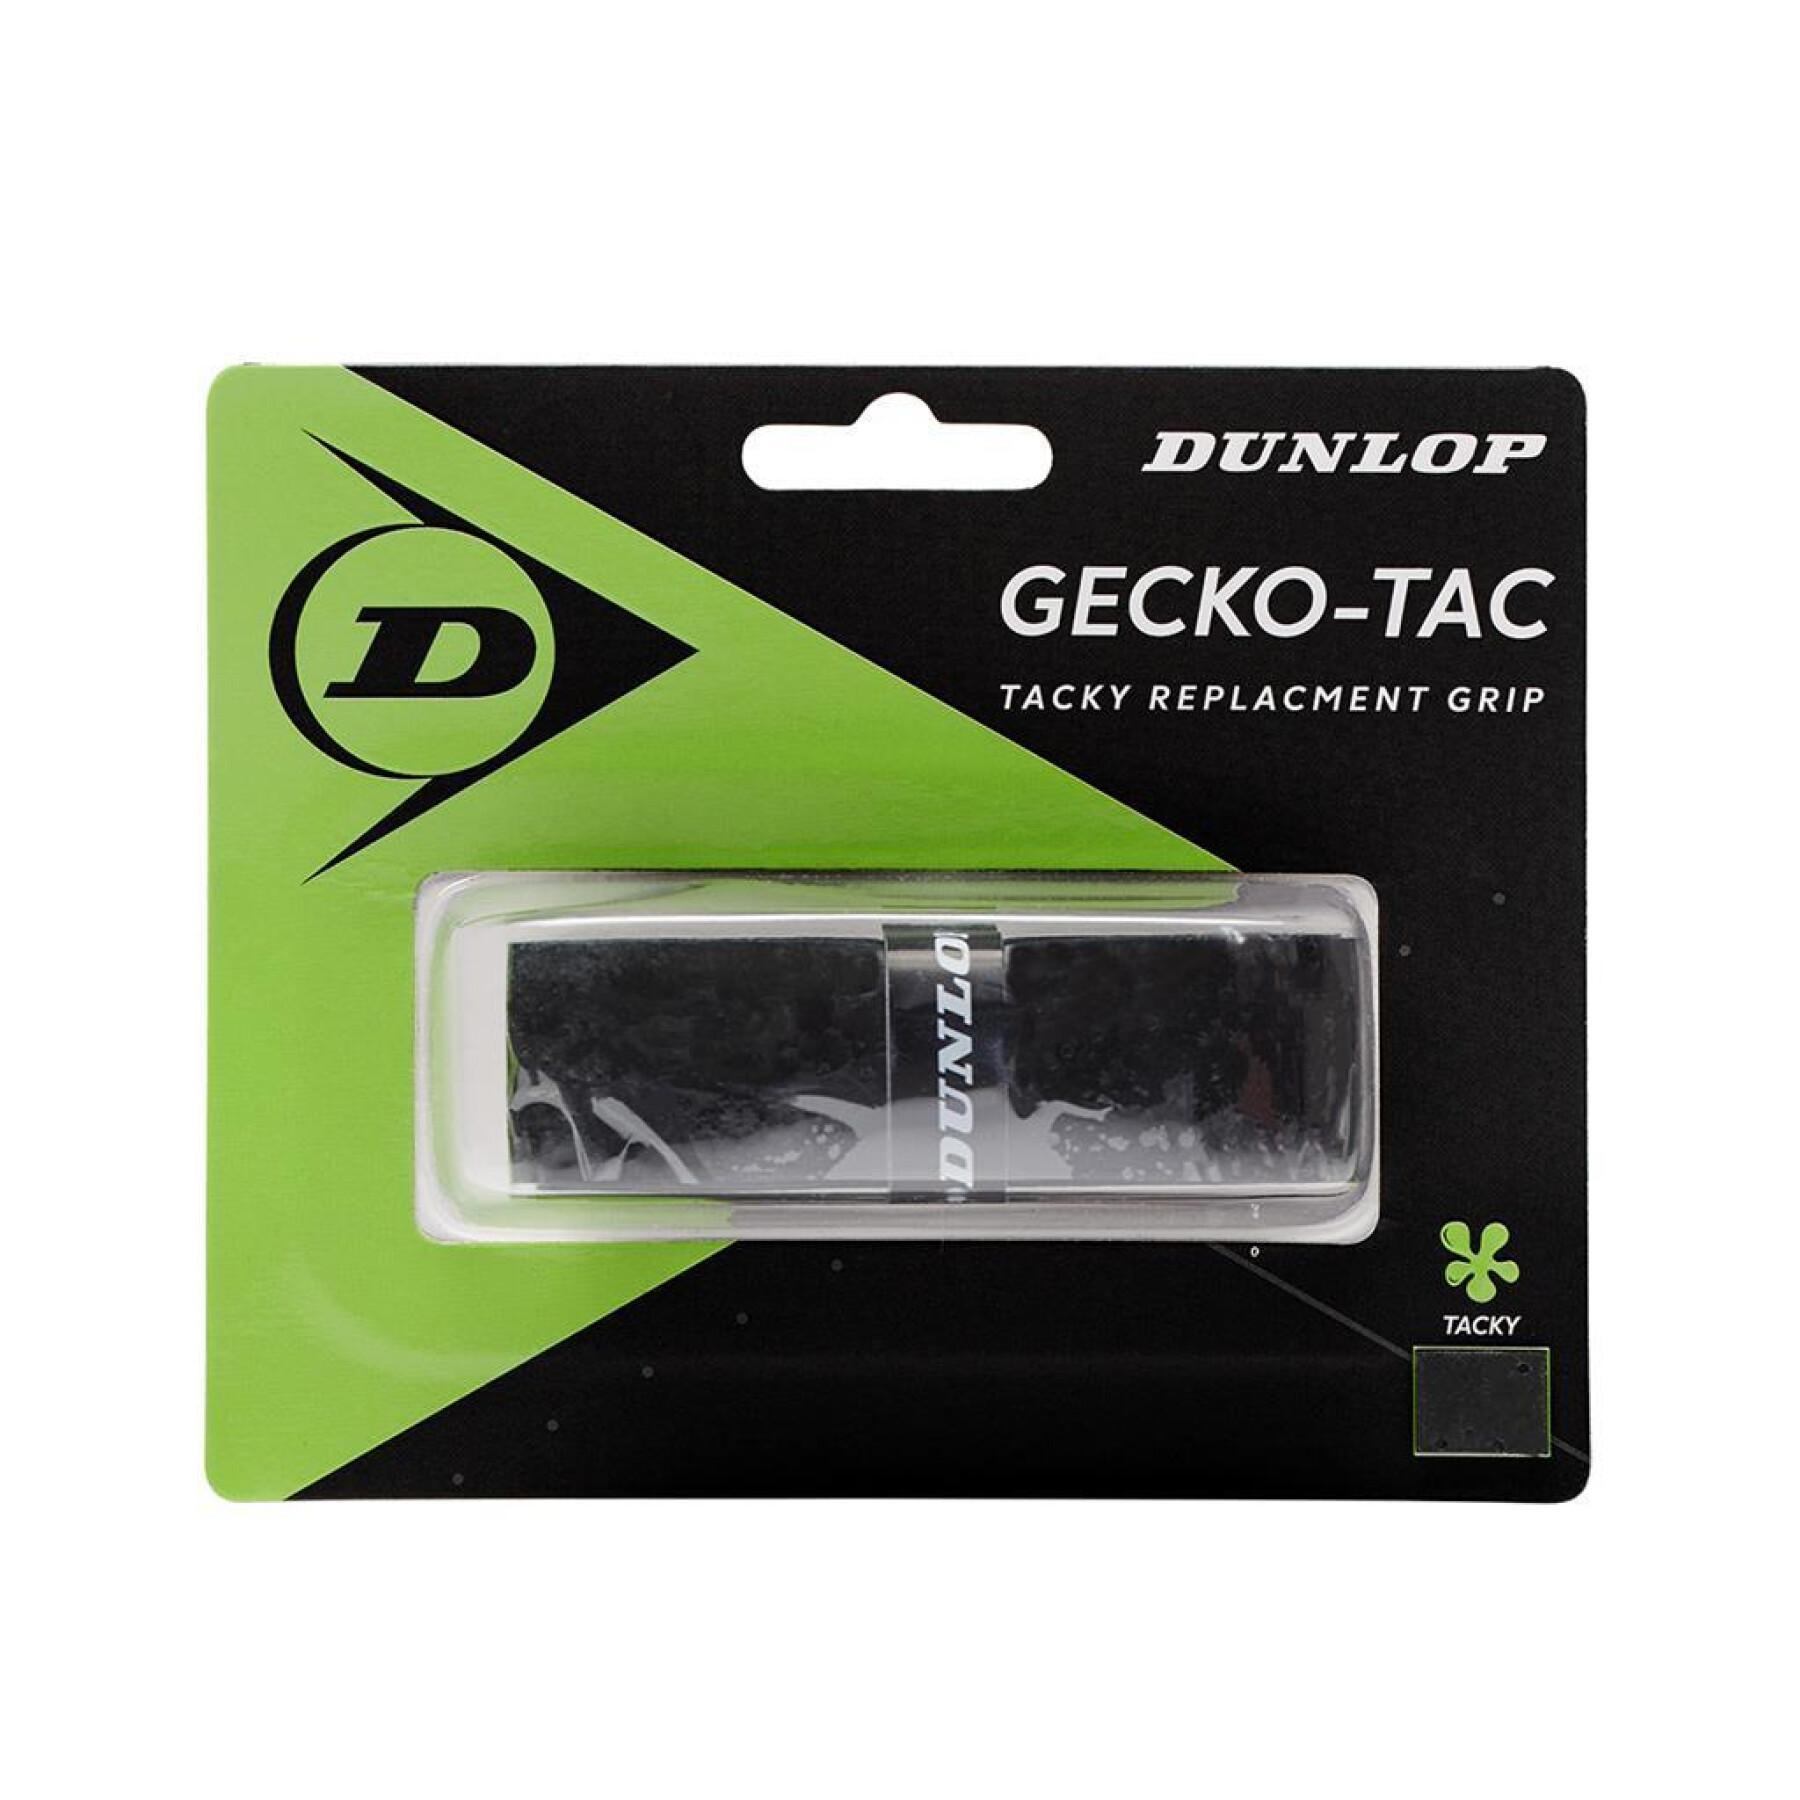 Impugnatura di ricambio per il tennis Dunlop Gecko-Tac